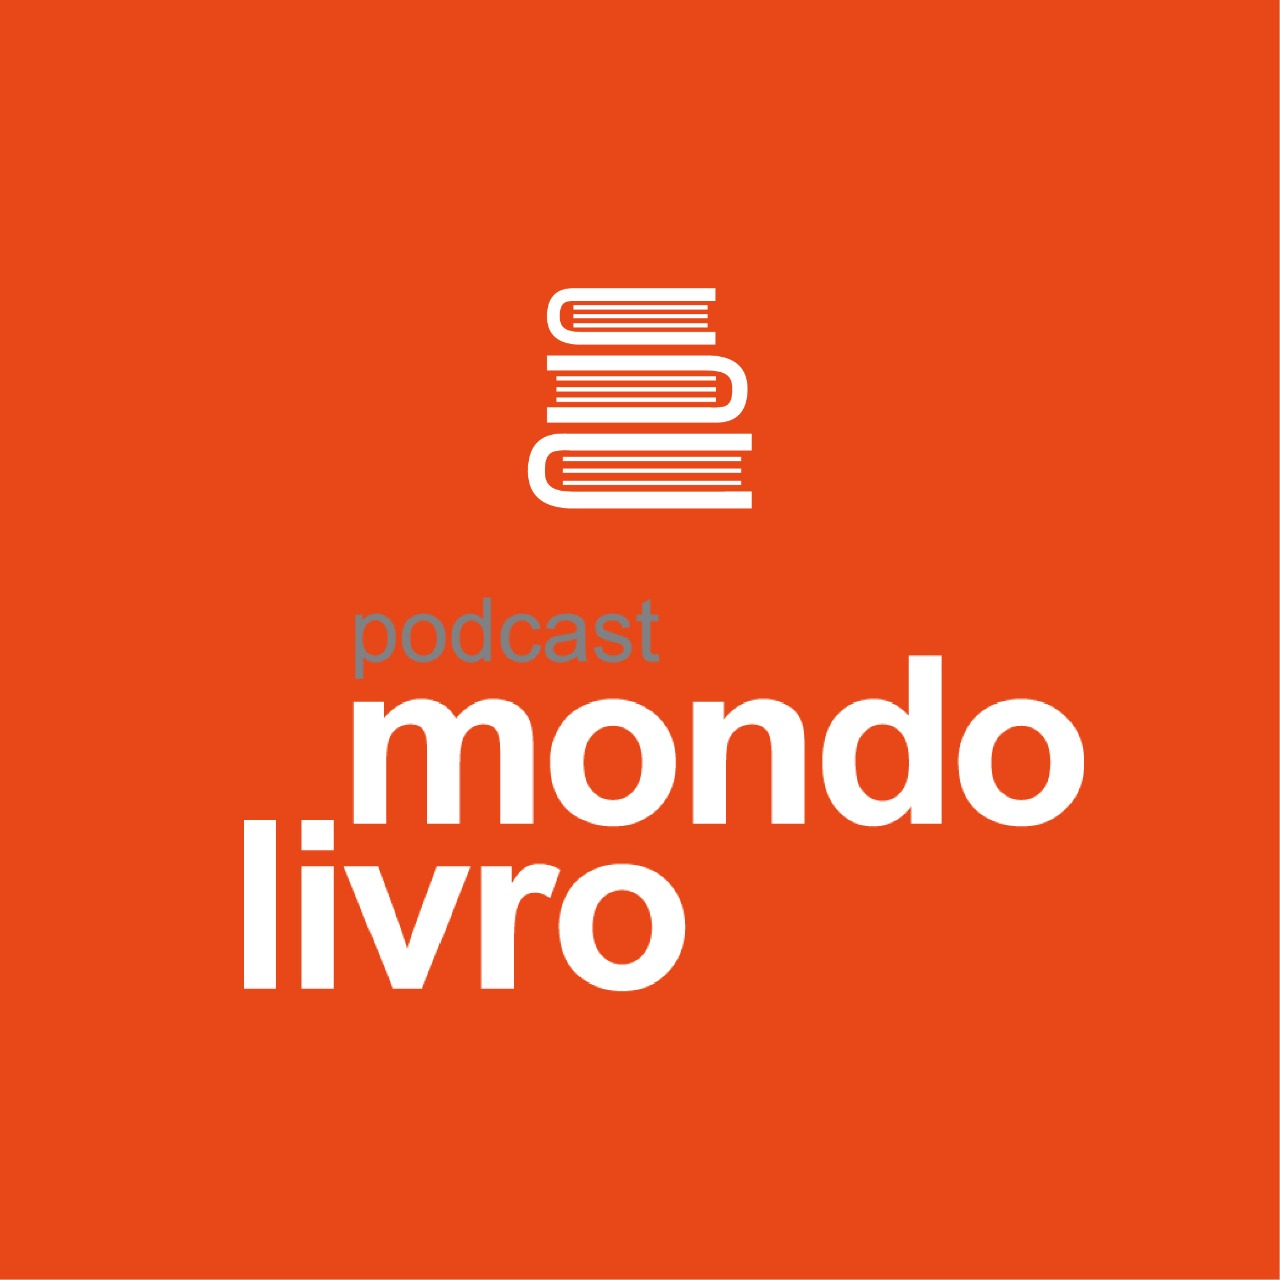 Mondolivro - “Caminhos e Contos" - um projeto de ressocialização pela palavra